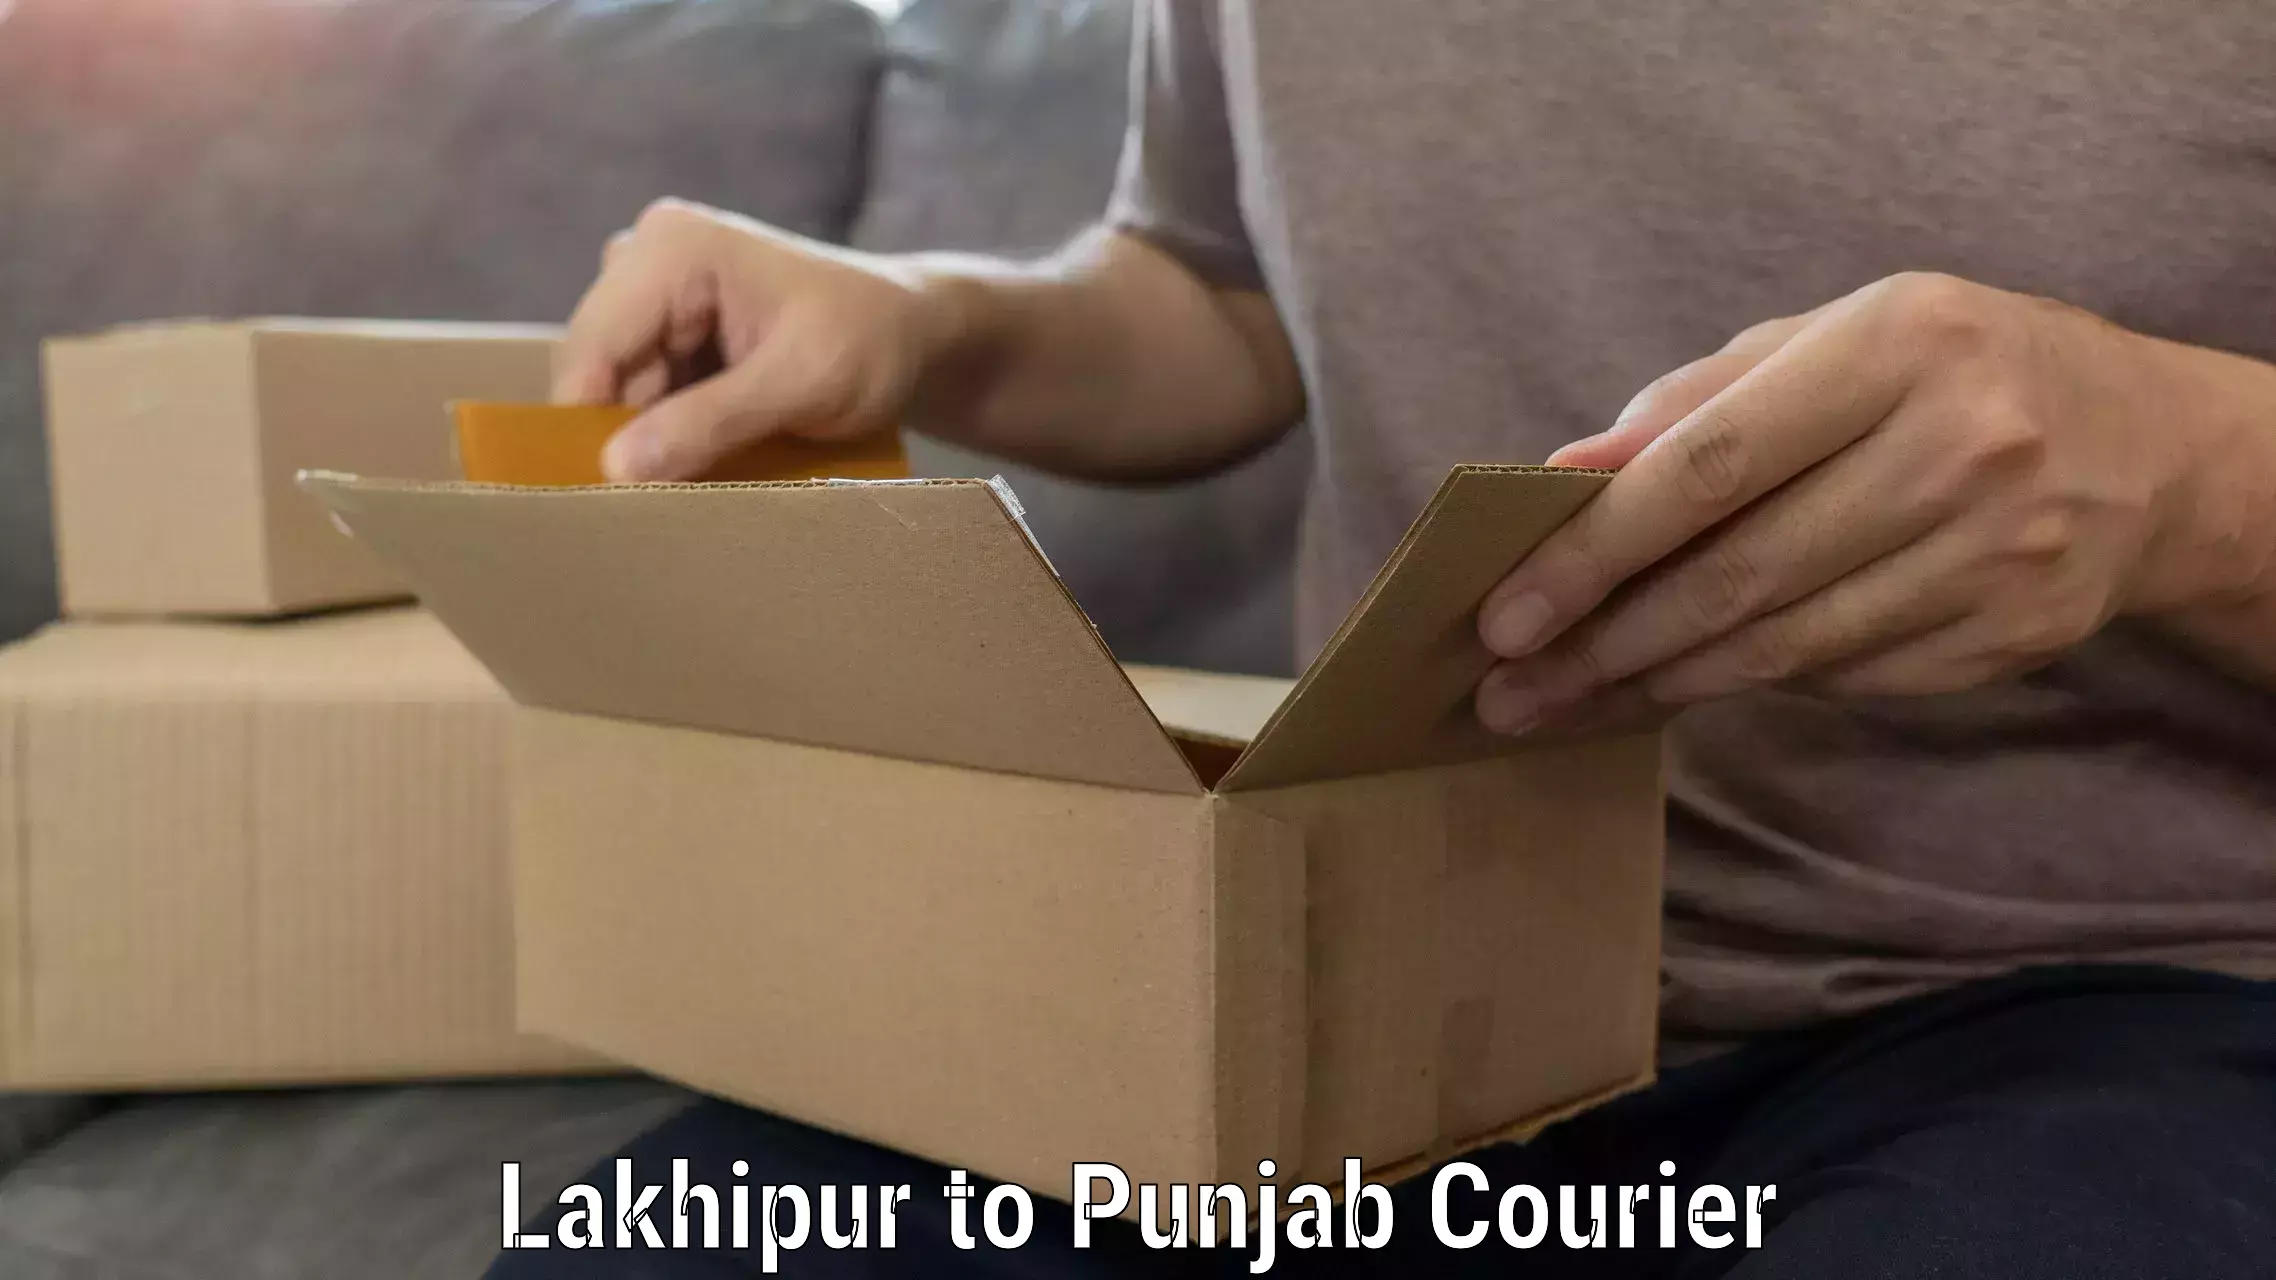 Professional furniture transport Lakhipur to Punjab